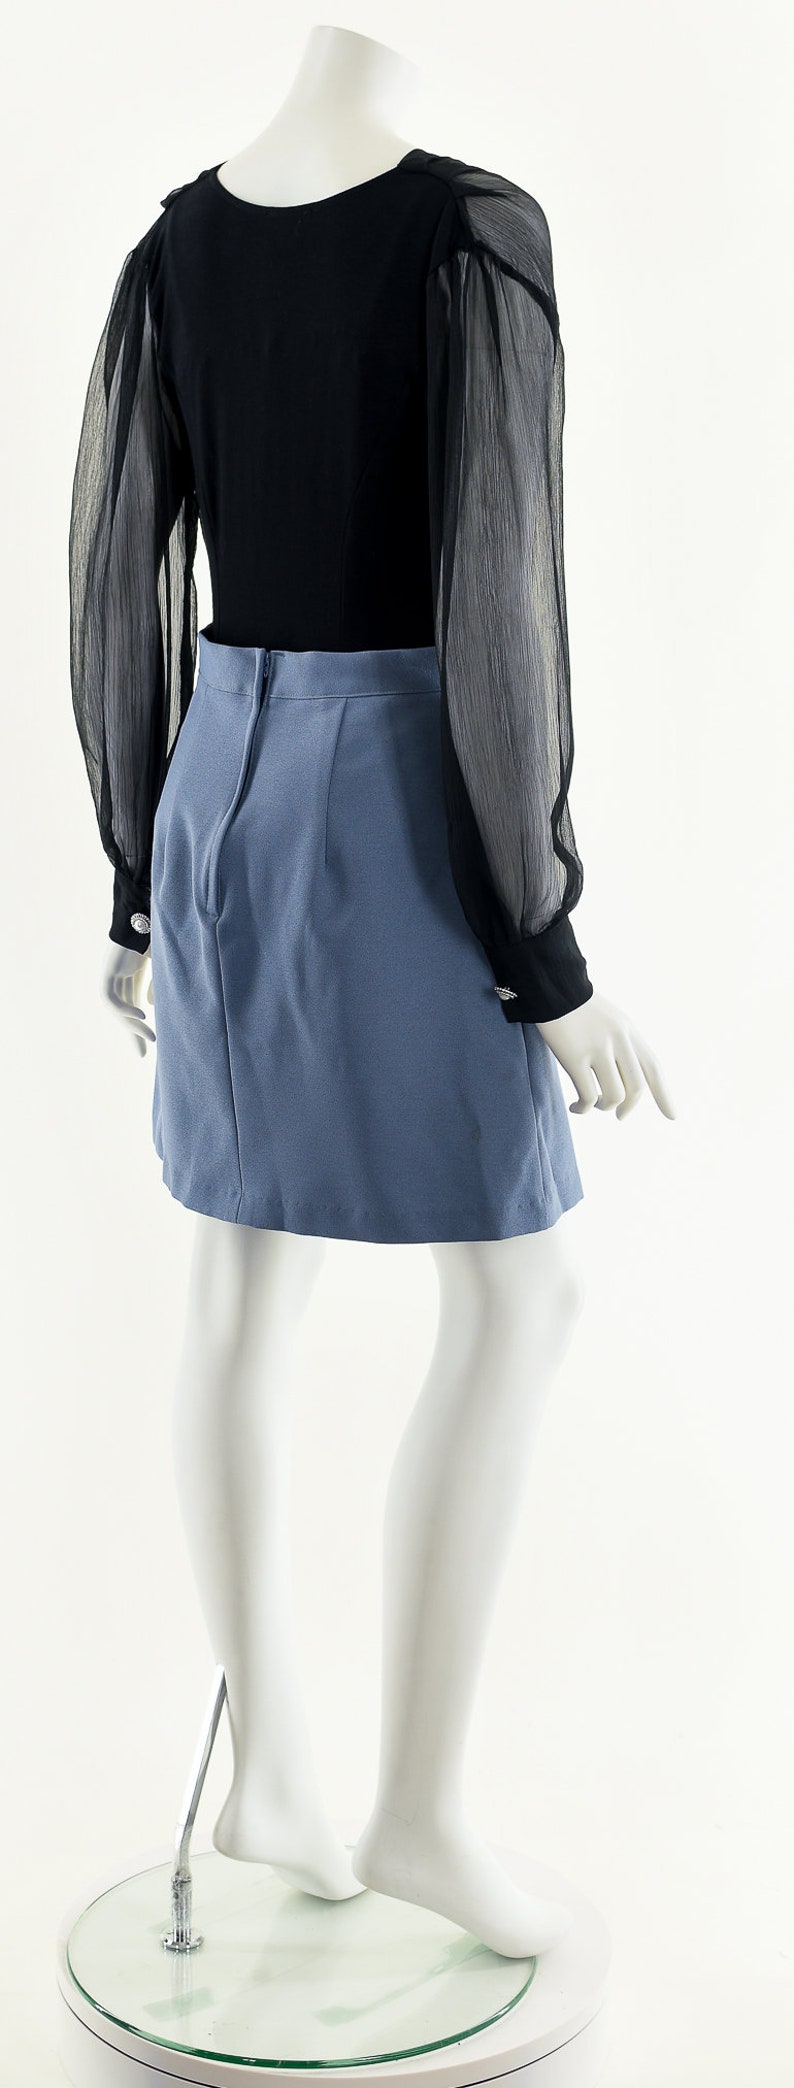 Blue Gray Skirt,90s Skater Skirt,Vintage A Line Skirt,High Waist Skirt,Vintage Mini Skirt,Vintage Scooter Skirt,Periwinkle Gray Skirt,Iconic image 6